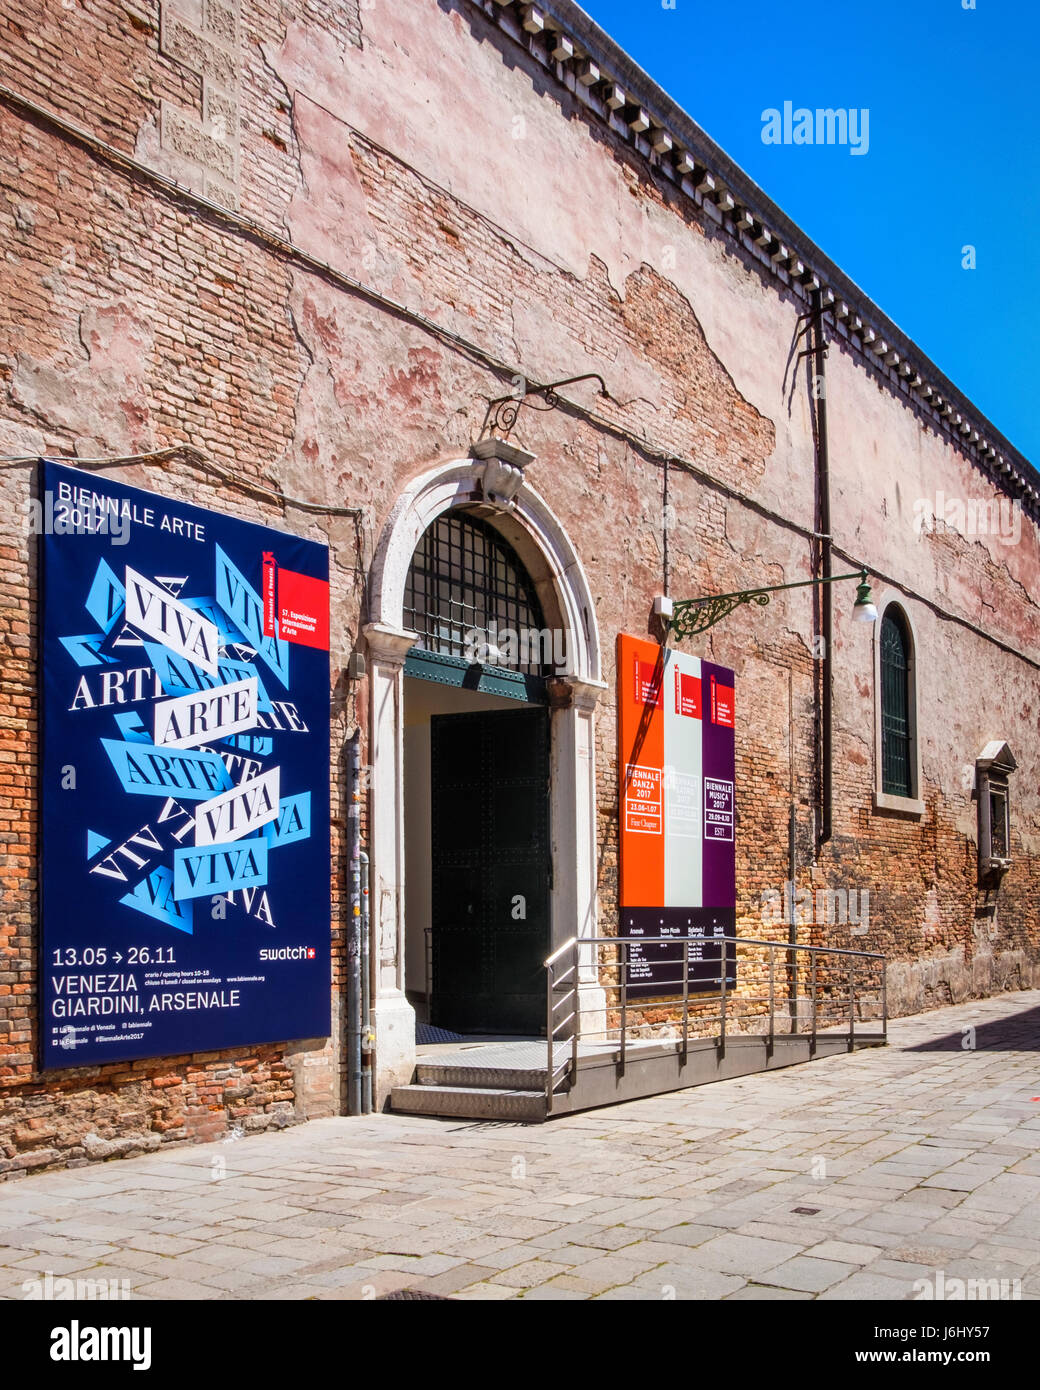 Venezia, Castello,Arsenale. 57ma Biennale di Venezia 2017,La Biennale di Venezia. Ingresso mostra Foto Stock